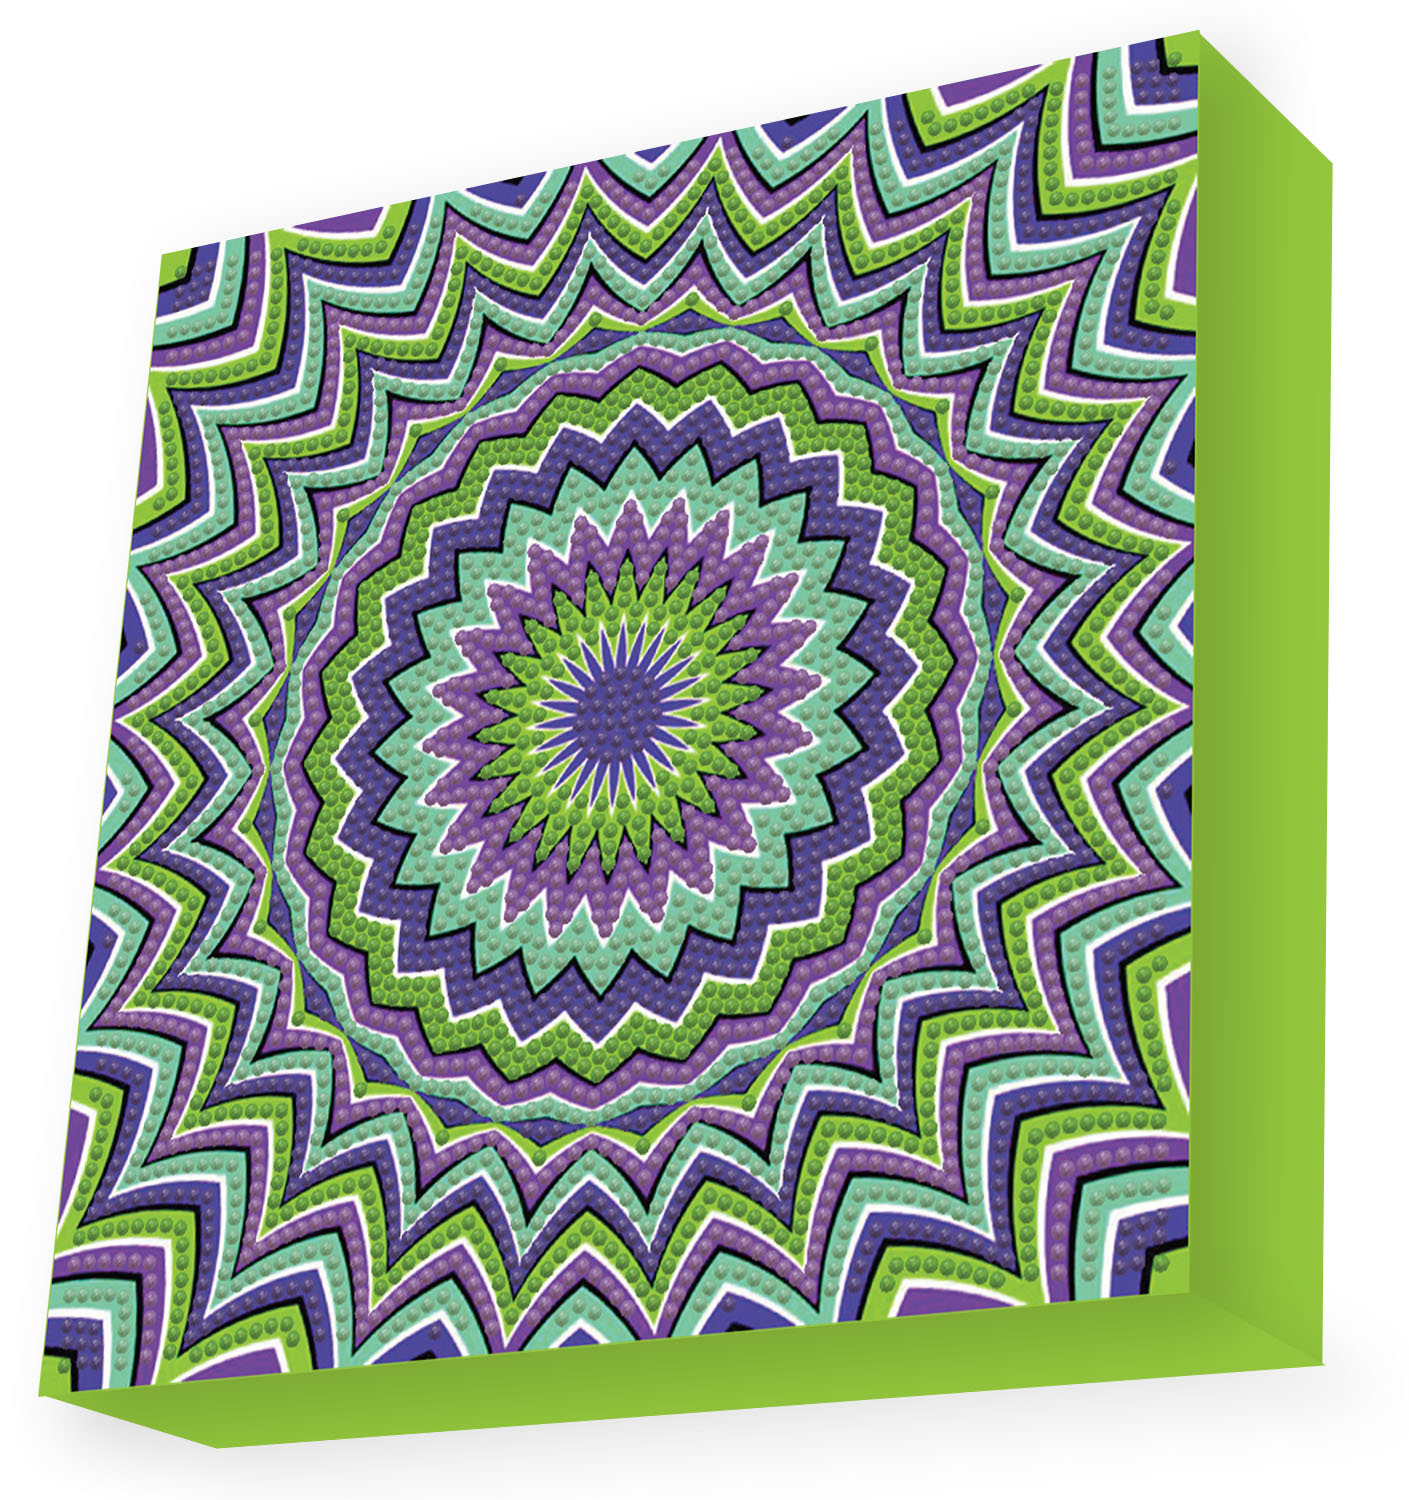 Tablou Diamond Box – Iluzie optică, 22 x 22 cm edituradiana.ro